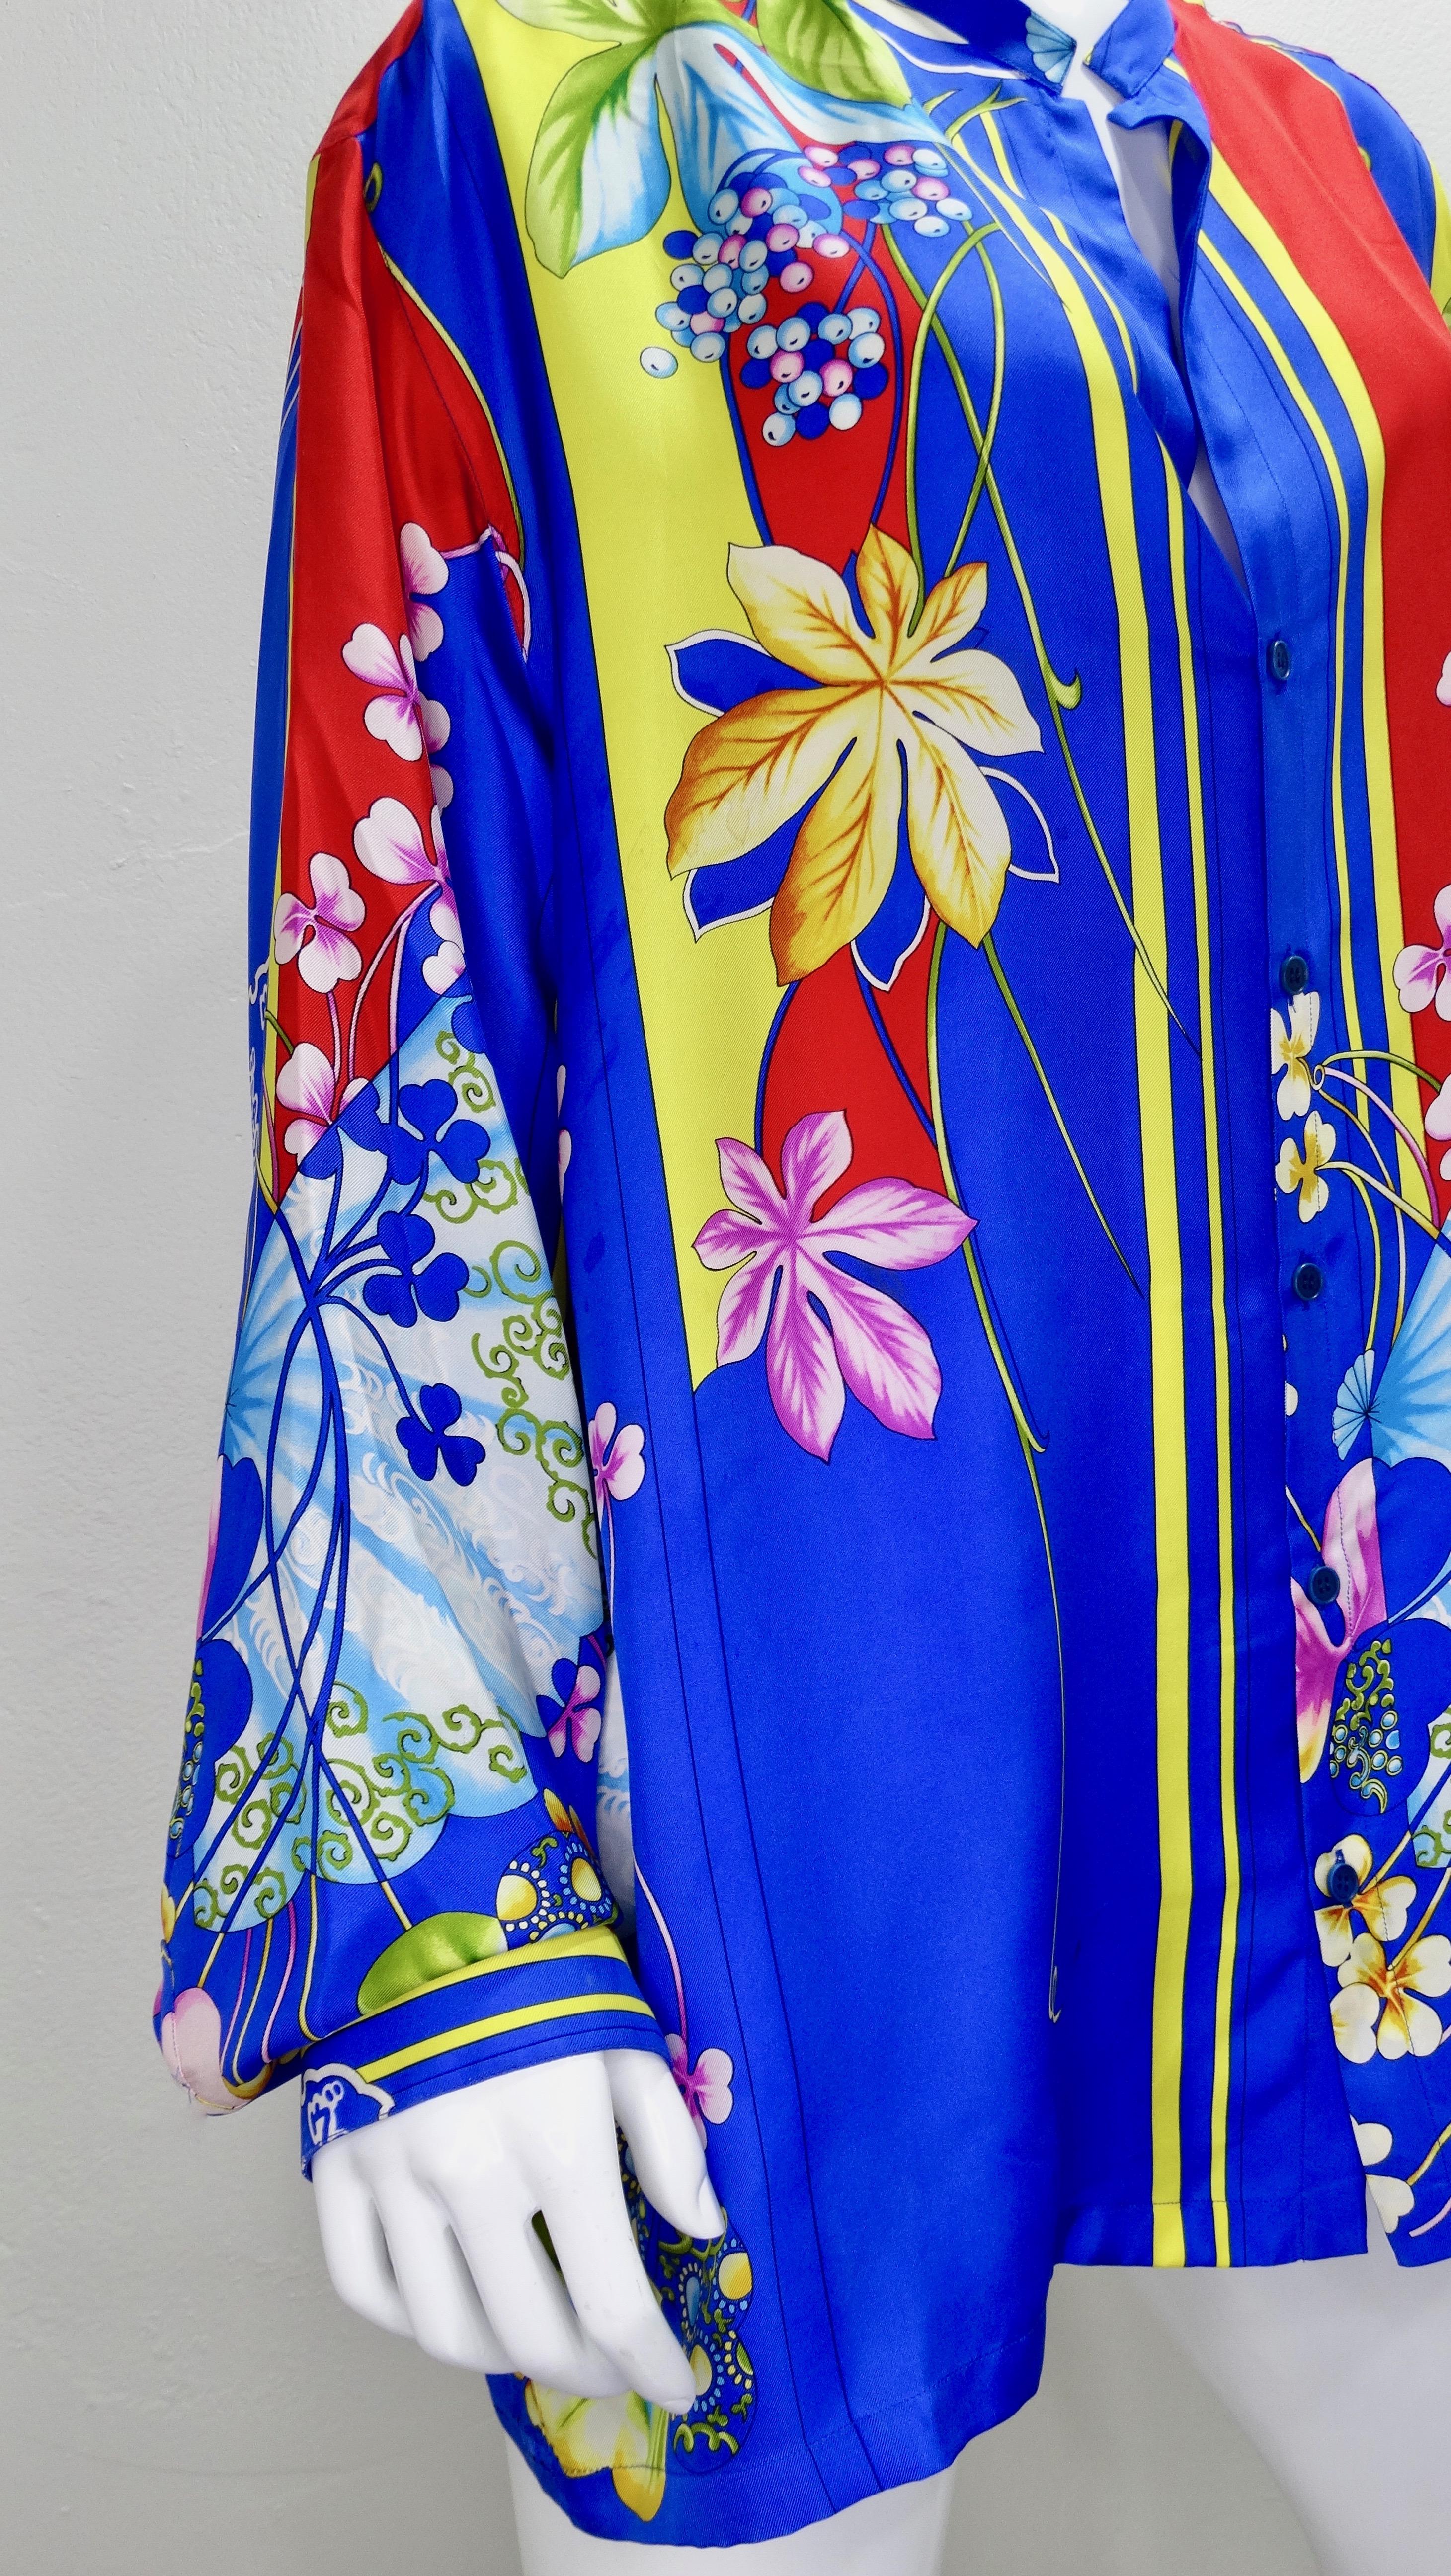 Holen Sie sich ein Stück aus den Versace-Archiven! Dieses farbenfrohe Button-Down-Hemd aus Seide aus den 1990er Jahren zeigt ein lebhaftes japanisch inspiriertes Motiv mit in Japan heimischen Blumen/Pflanzen, traditionellen Fächern und japanischen